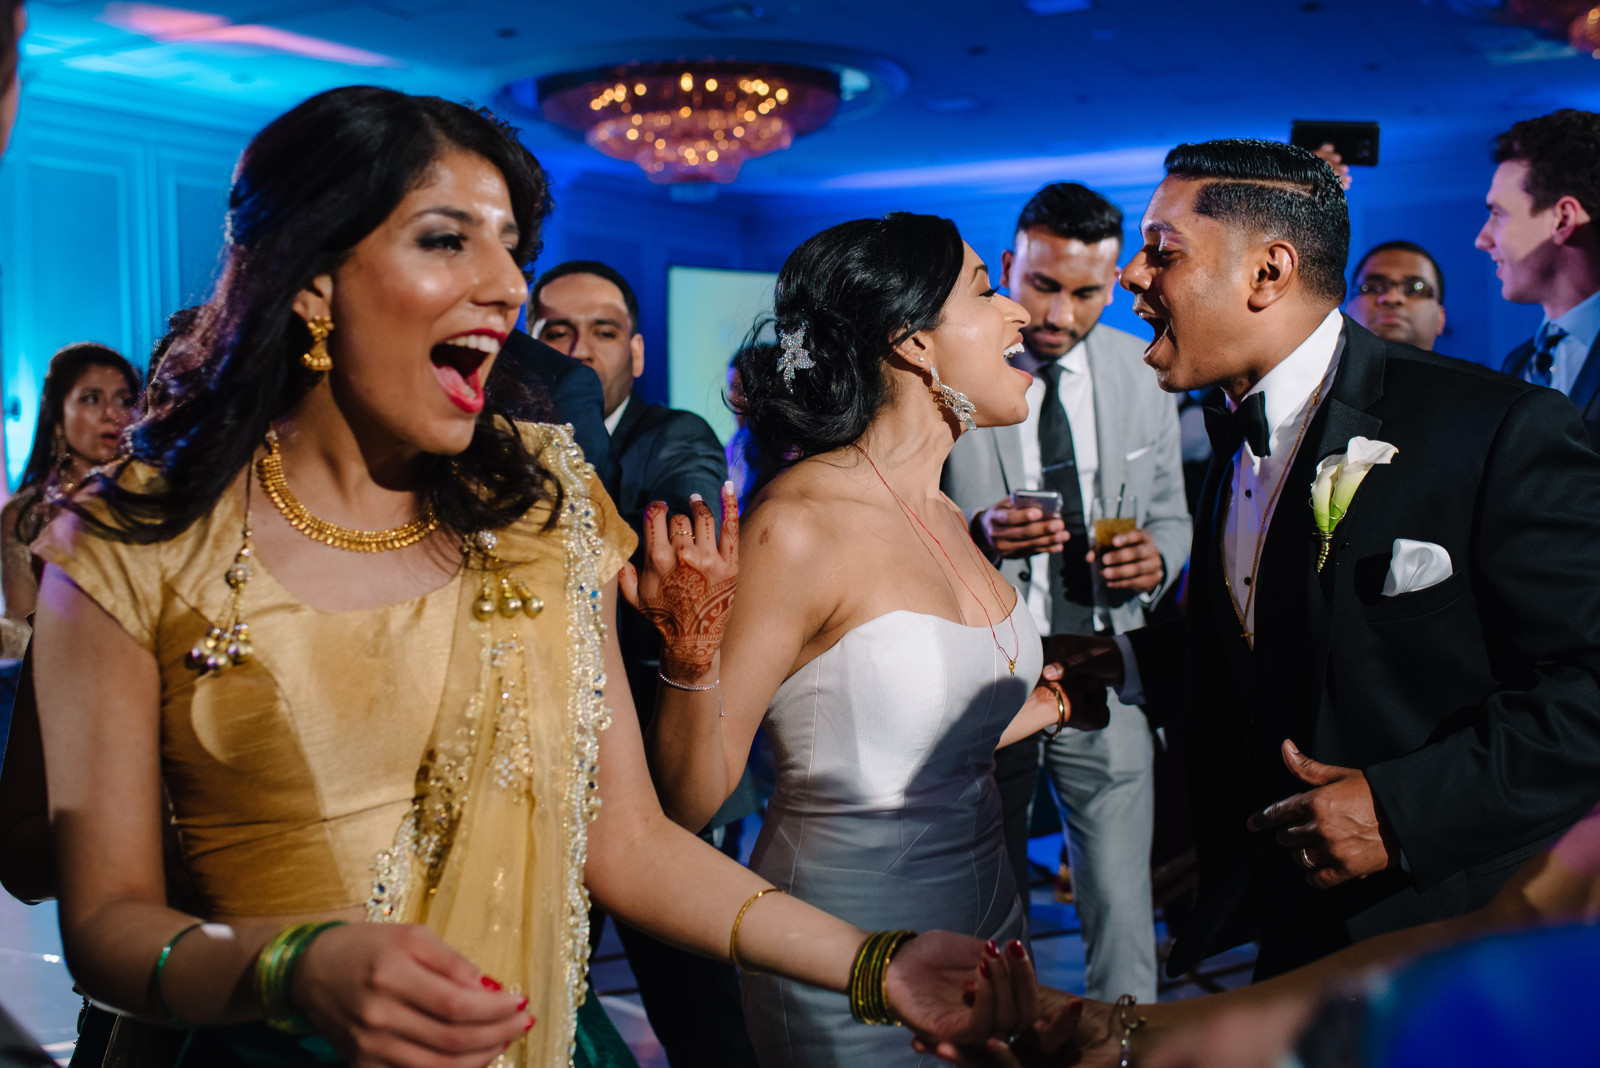 Westin Galleria Houston Wedding Reception Photos (7)